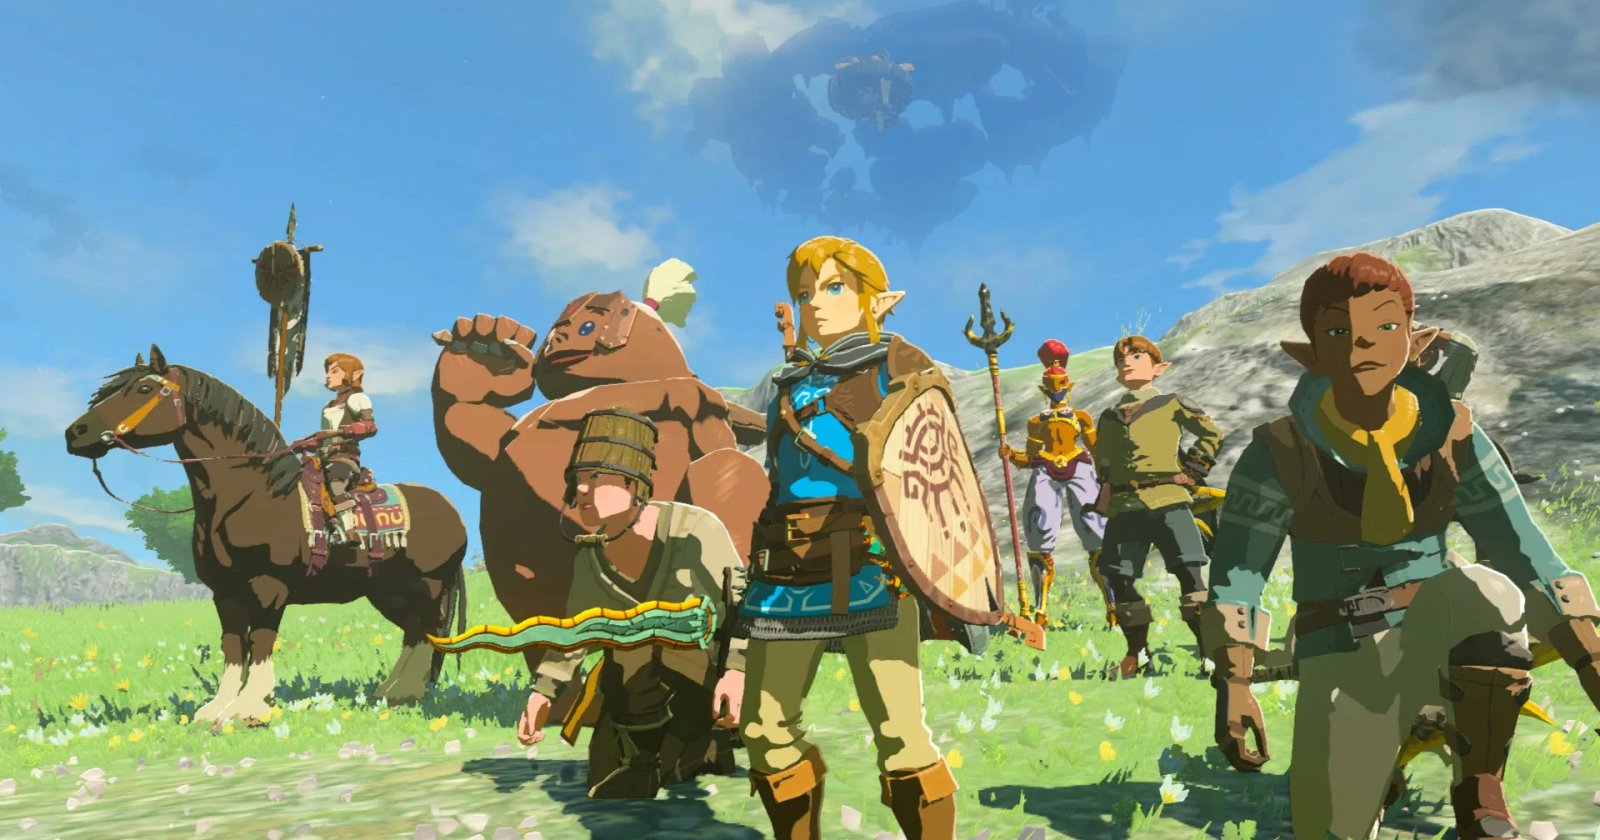 ผู้กำกับ ‘Zelda’ เวอร์ชันไลฟ์แอ็กชัน ต้องการนำโทนของ Hayao Miyazaki มาสร้างโลกแฟนตาซีสุดลึกล้ำ